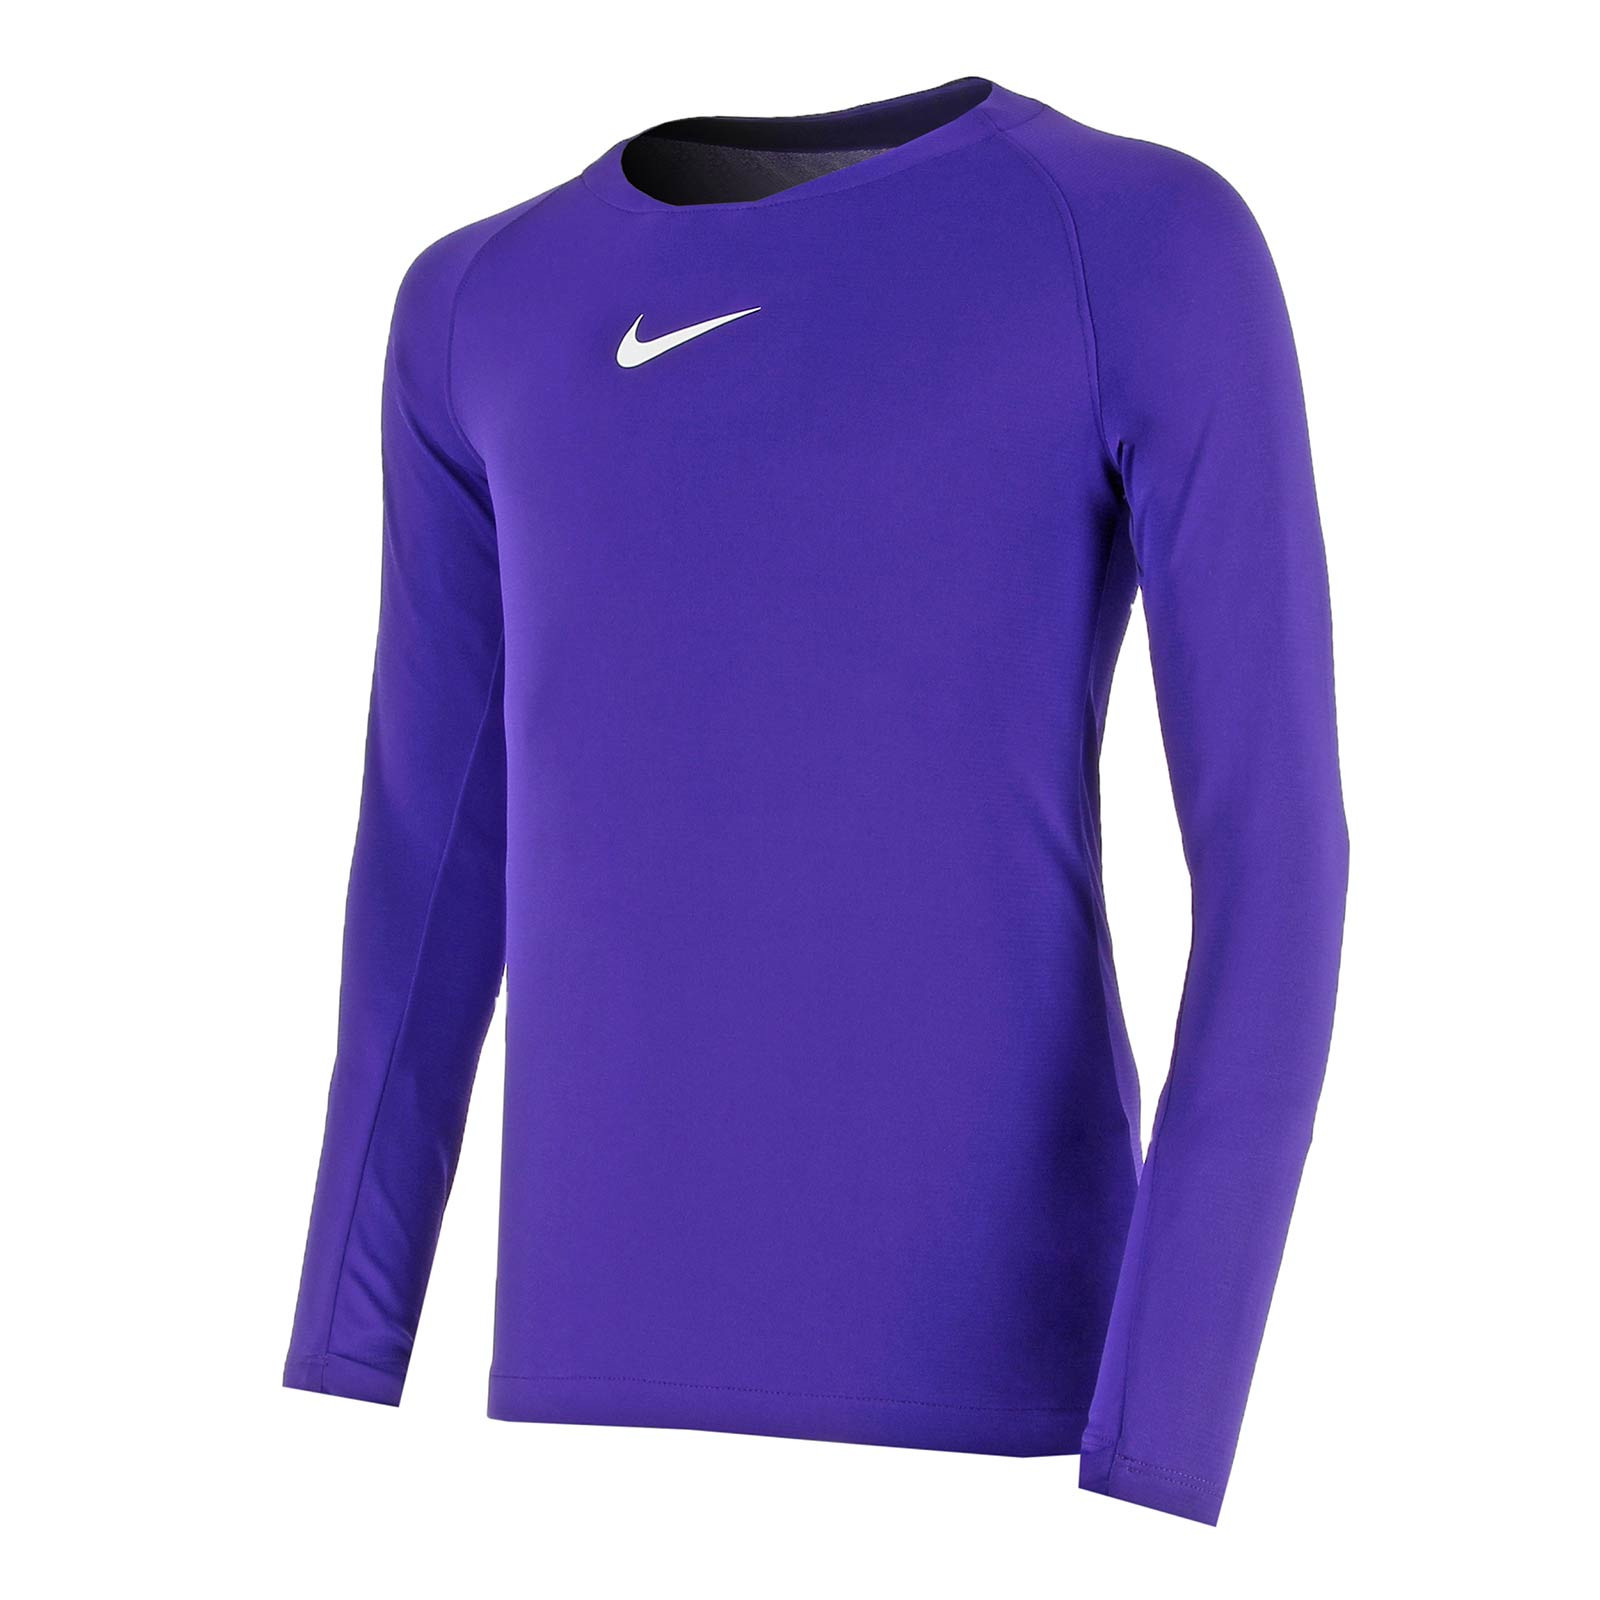 consumo Poner la mesa Tratamiento Camiseta térmica niño larga Nike morada |futbolmaniaKids